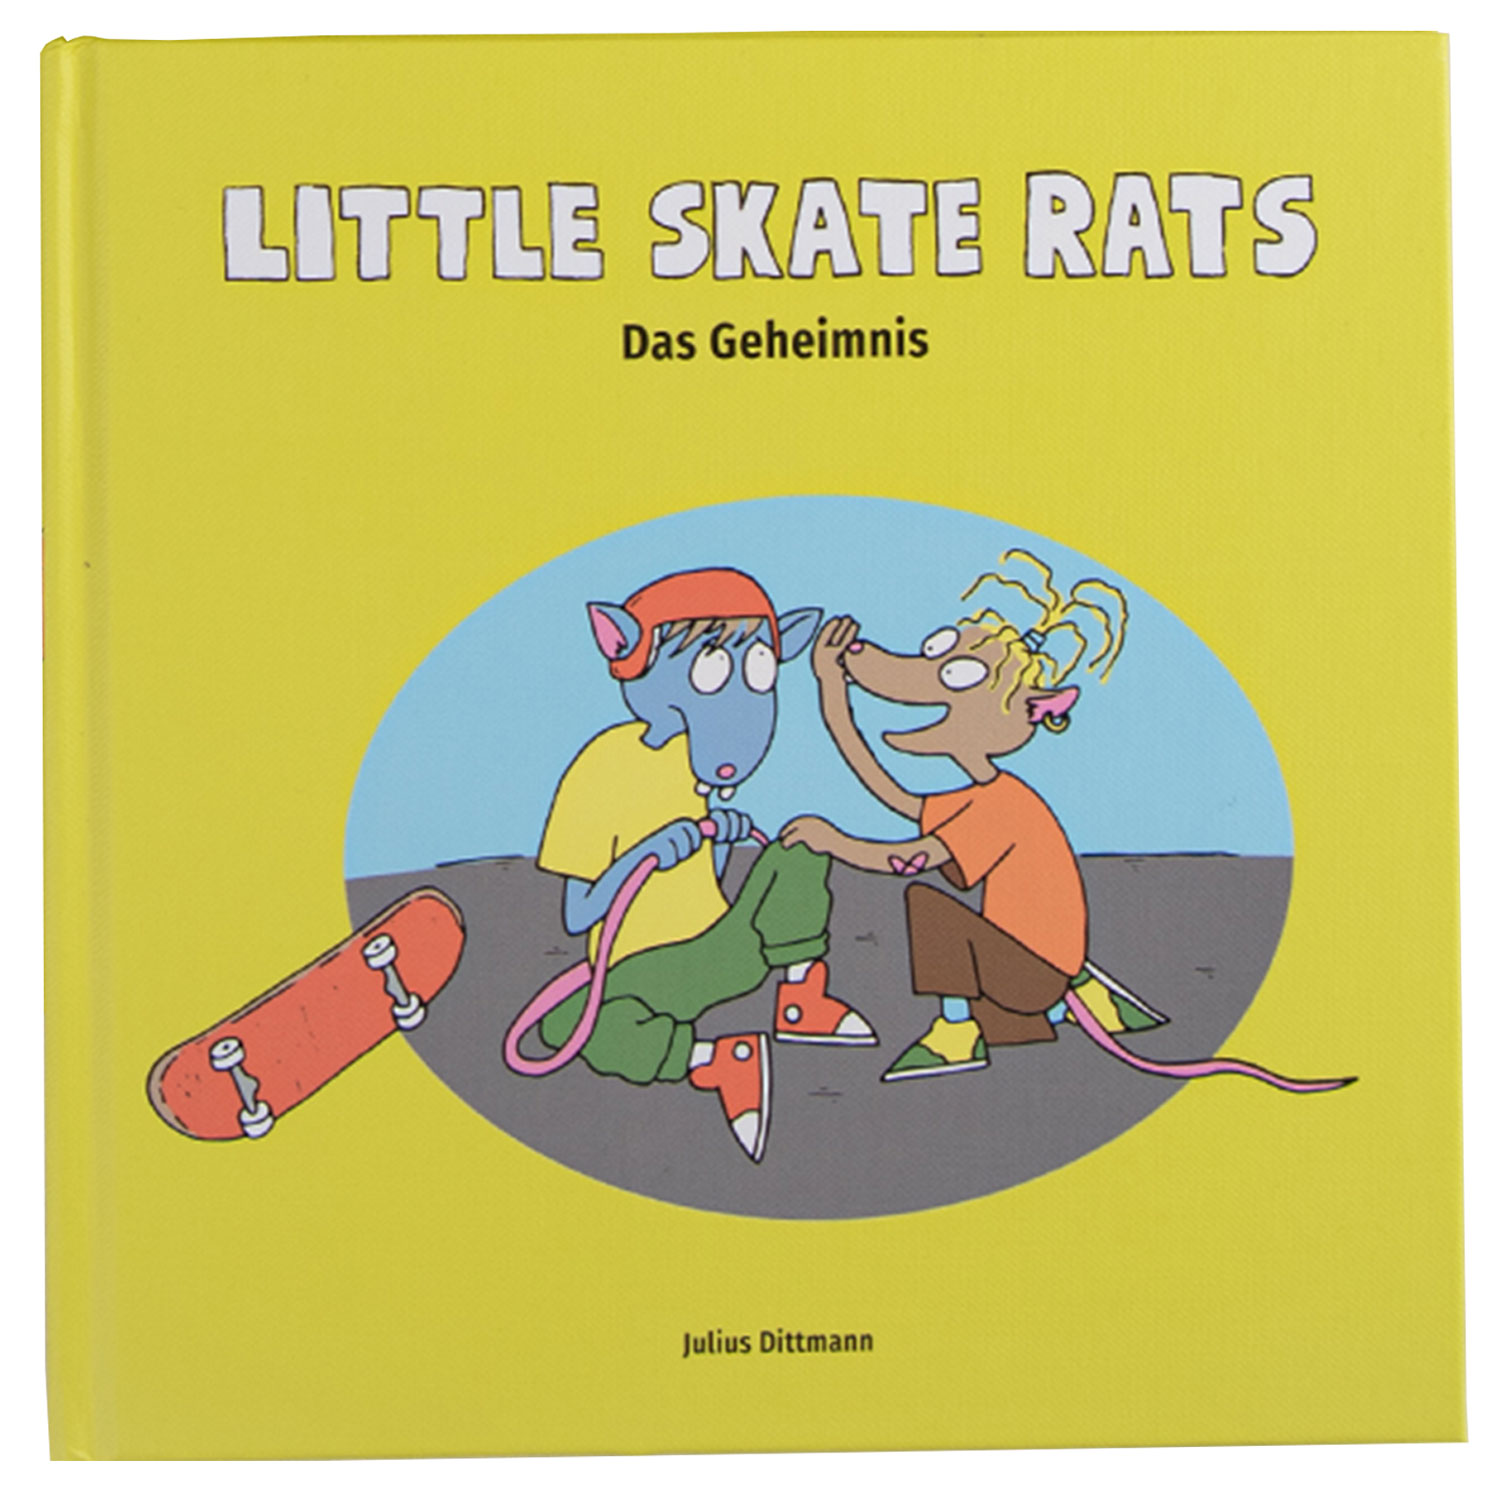 Little-Skate-Rats-Buch-1